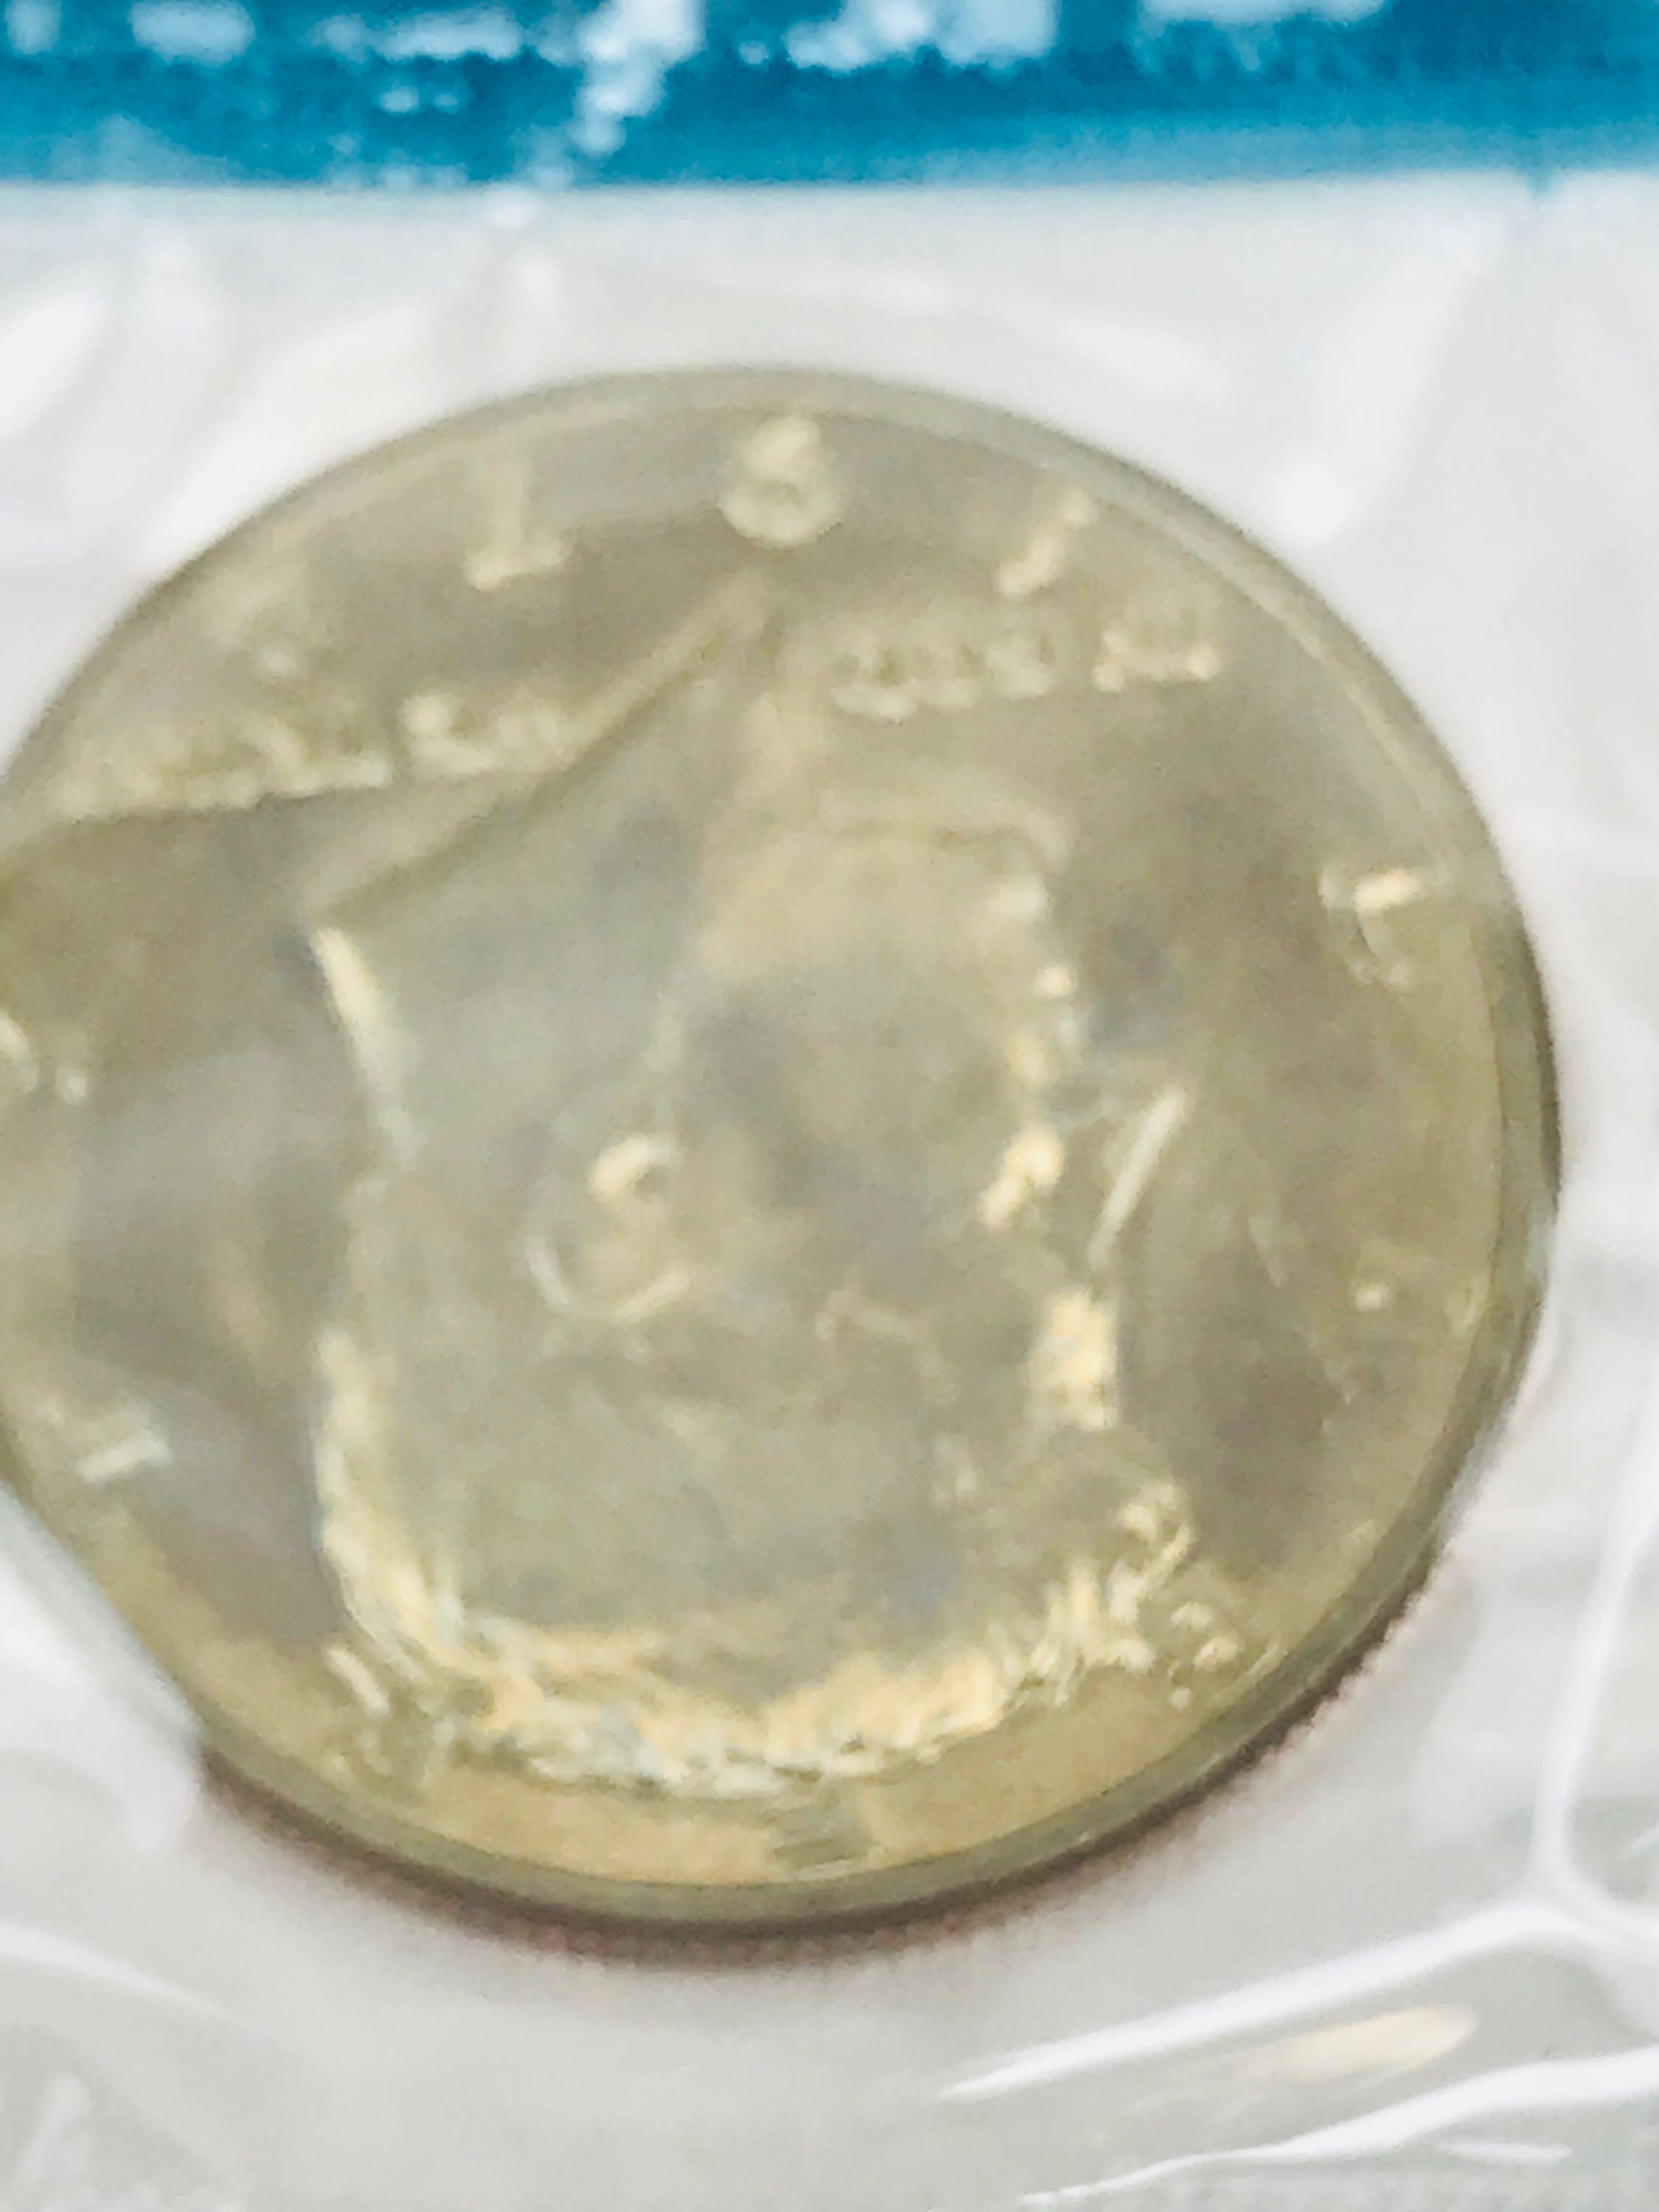 1972 Uncirculated U.S. Mint Proof Set